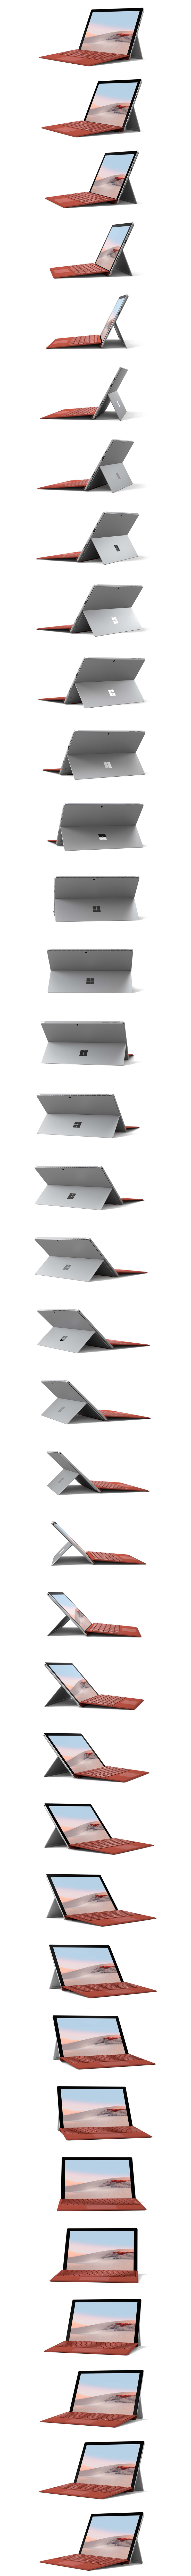 تدوير جهاز Surface Pro 7 بزاوية 360 درجة